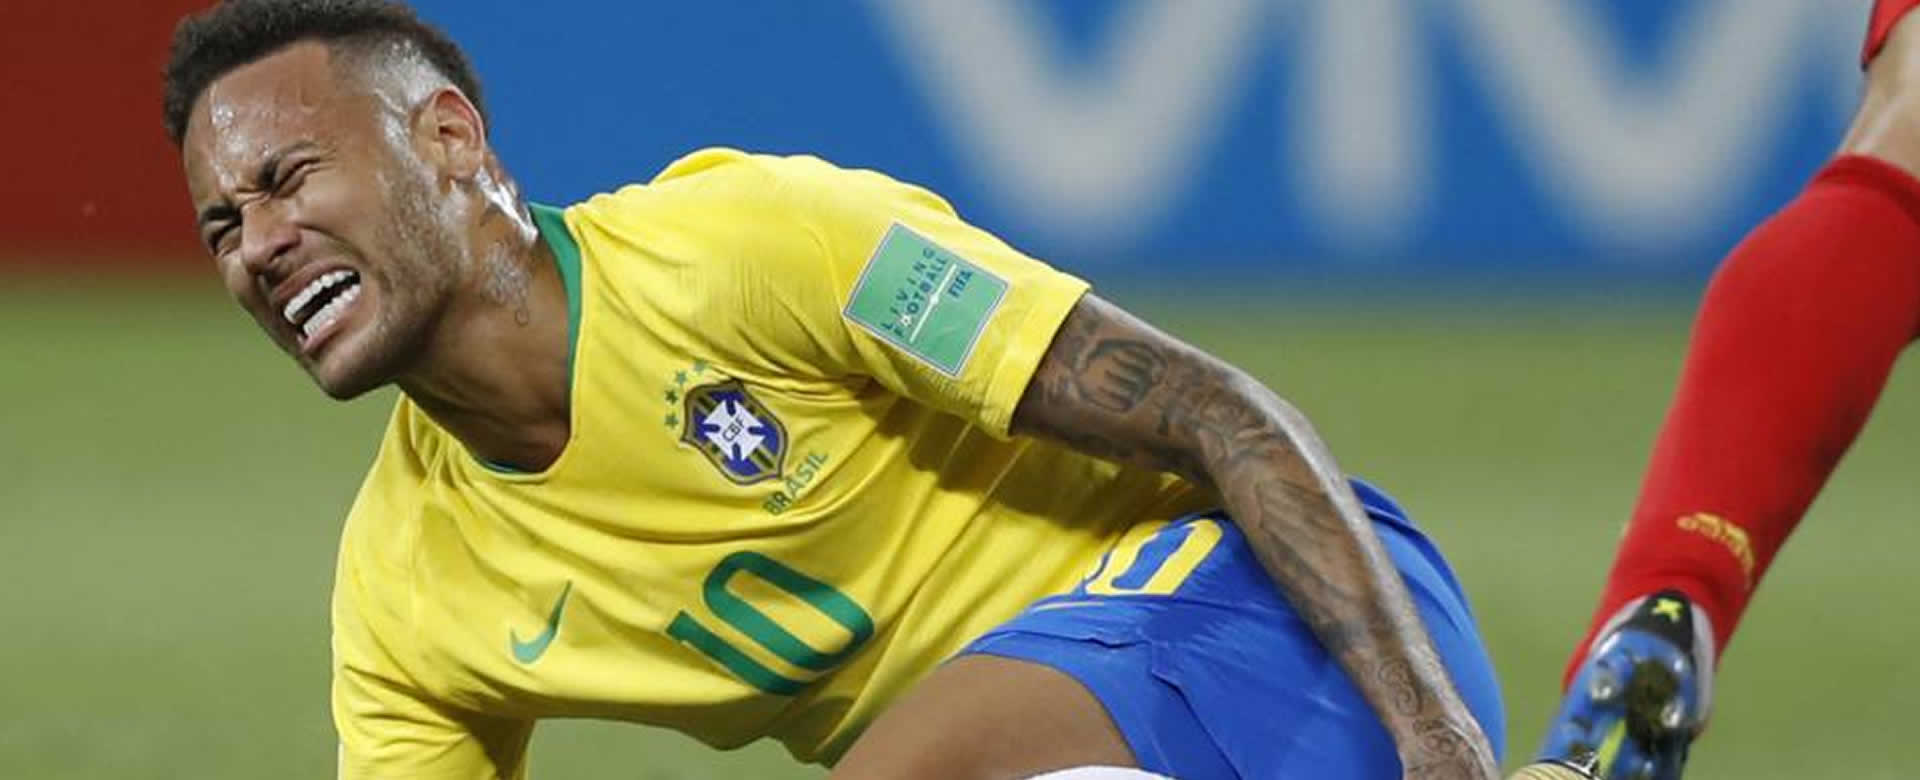 Juega como una mujer, no como Neymar”, la frase que alborotó las redes